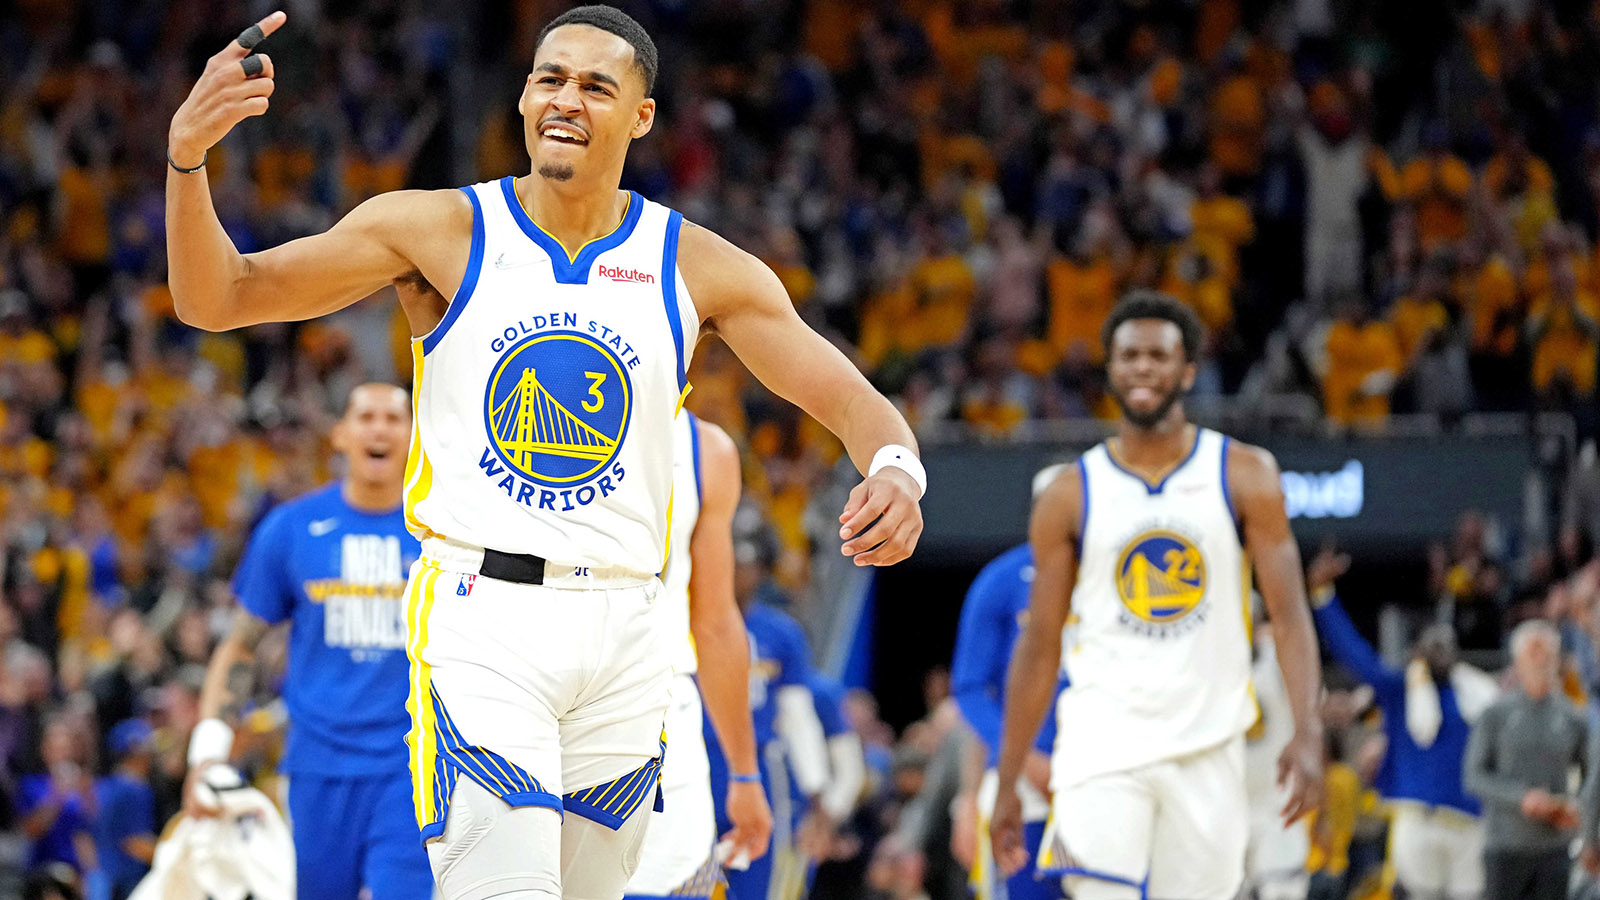 Five Warriors uniforms make ESPN's best ever list, one among 10